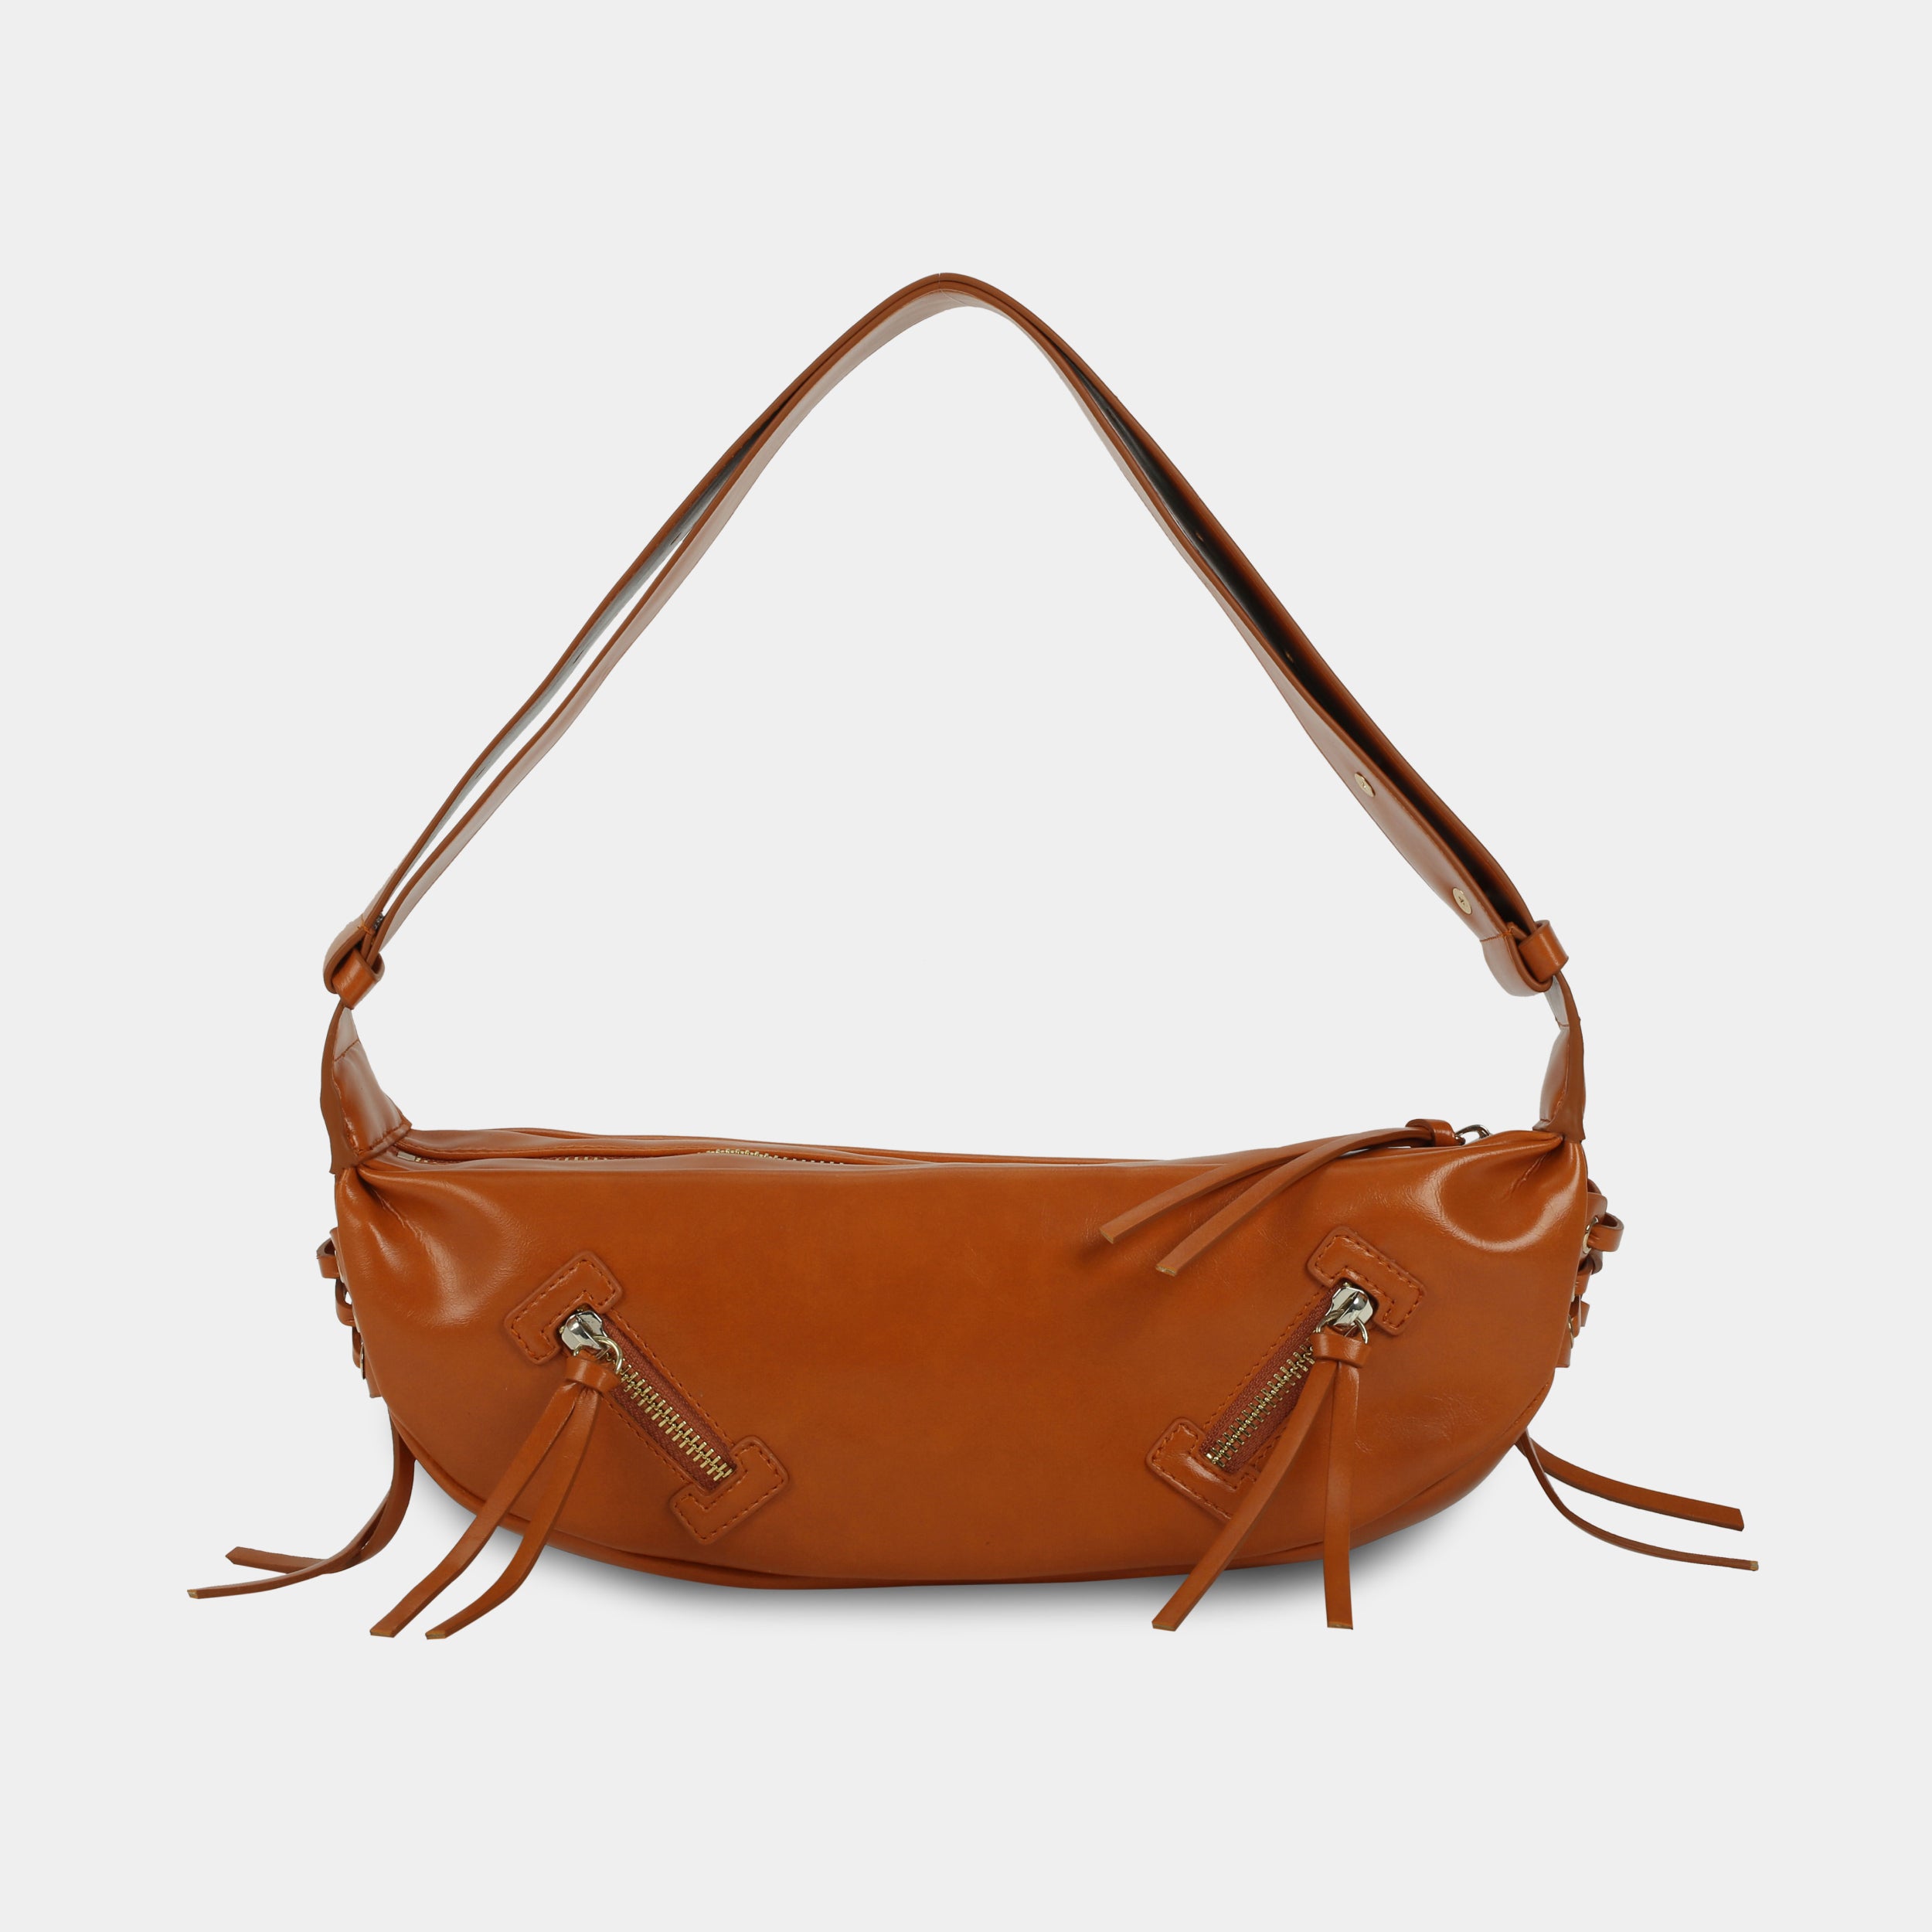 LACE bag large size (M) orange color